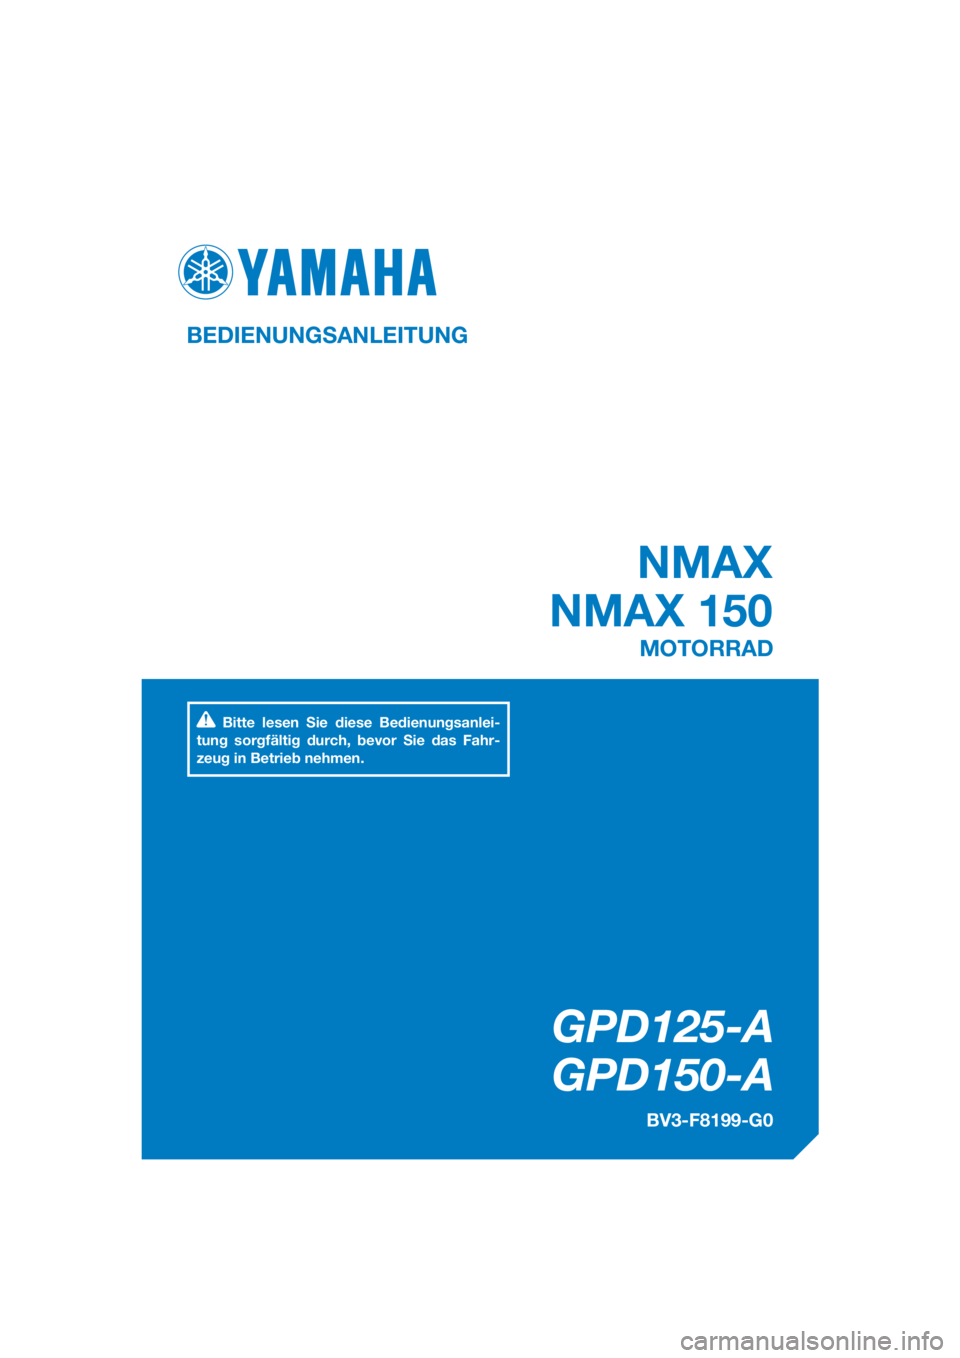 YAMAHA NMAX 125 2016  Betriebsanleitungen (in German) DIC183
GPD125-A
GPD150-A
NMAX
NMAX 150
BEDIENUNGSANLEITUNG
BV3-F8199-G0
MOTORRAD
Bitte lesen Sie diese Bedienungsanlei-
tung sorgfältig durch, bevor Sie das Fahr-
zeug in Betrieb nehmen.
[German  (G)